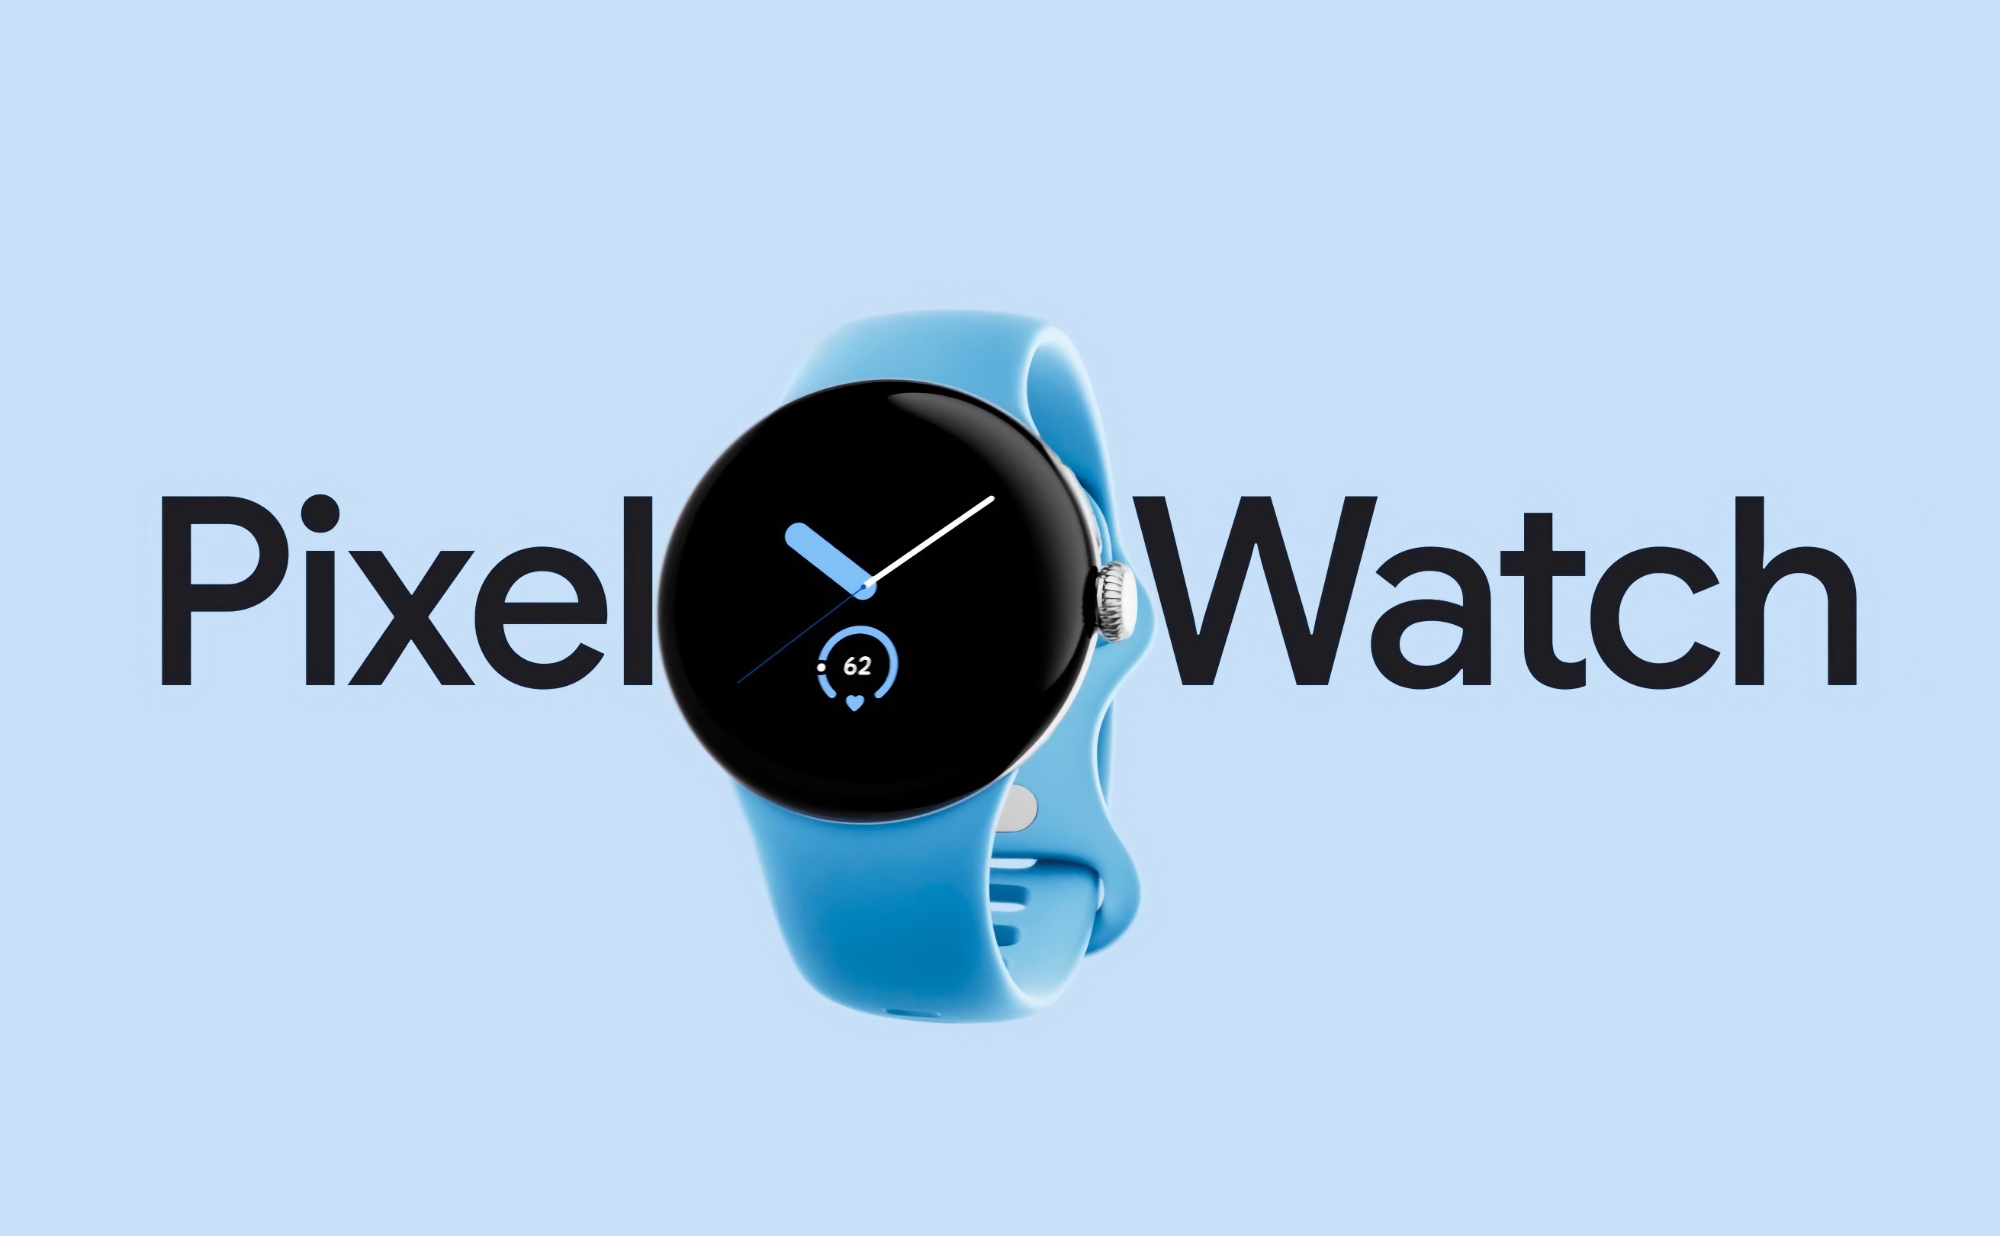 Den ursprungliga Google Pixel Watch med Wi-Fi är tillgänglig på Amazon till ett rabatterat pris på $ 74